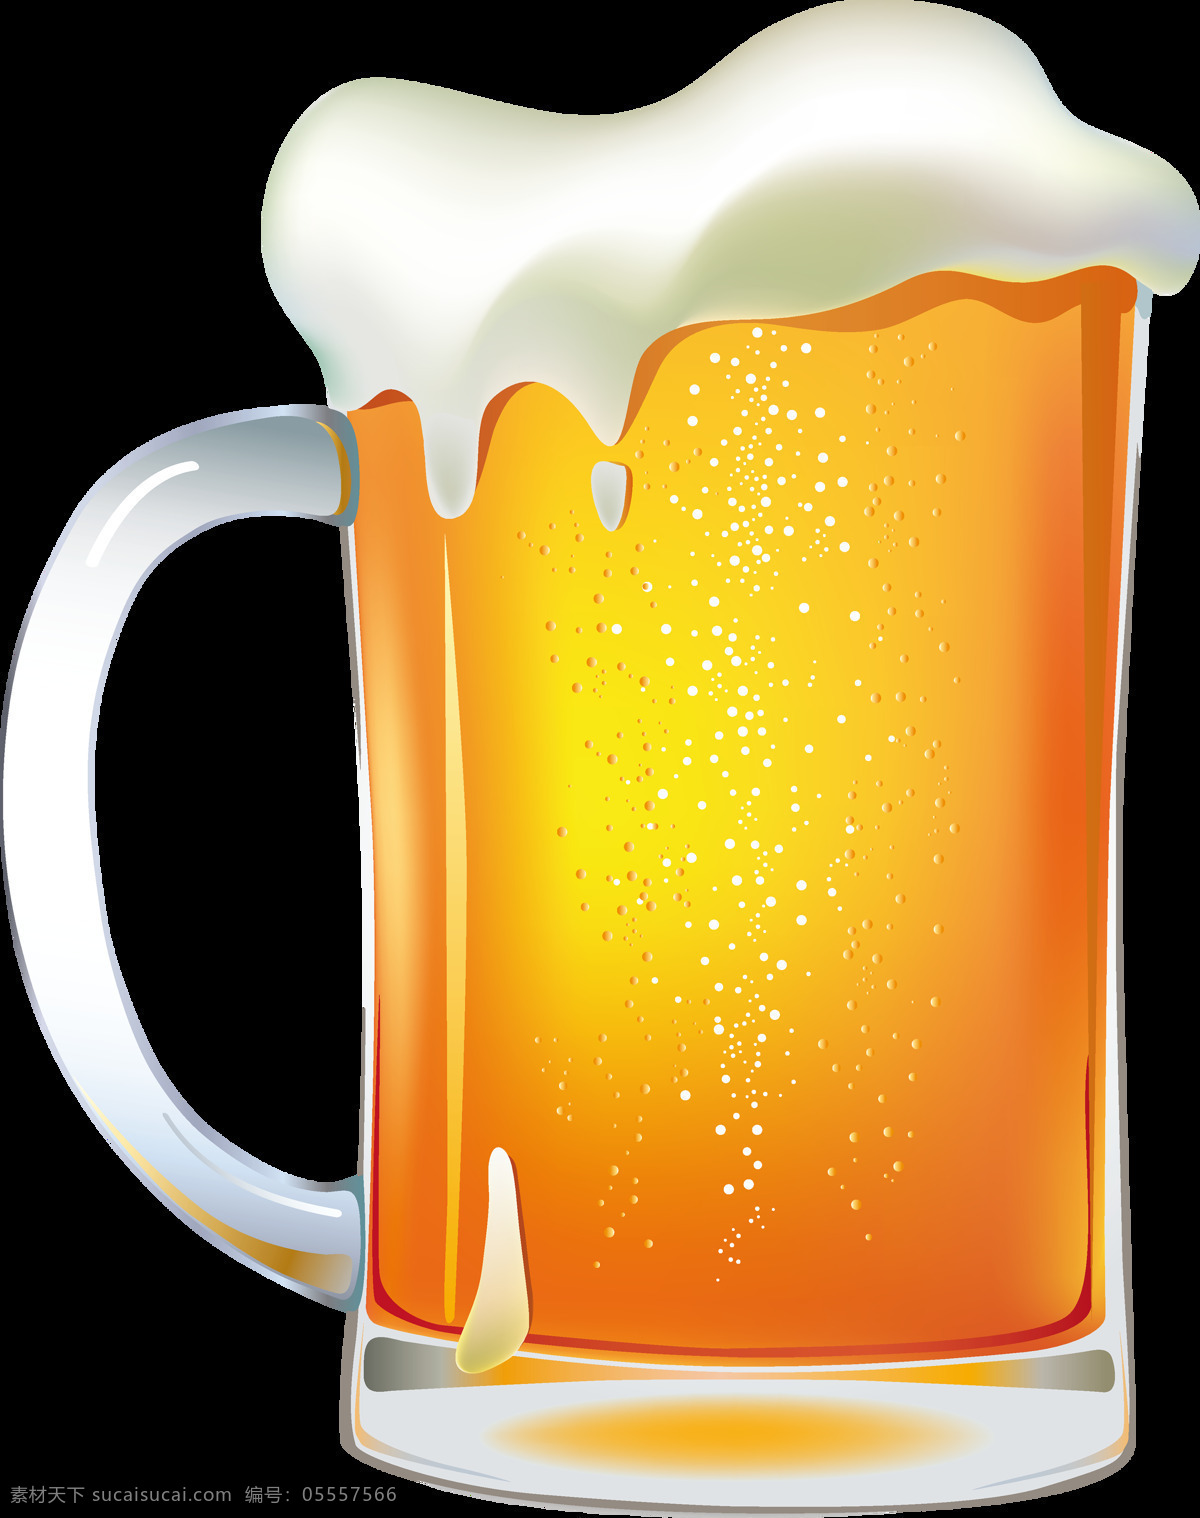 平面 卡通 啤酒杯 元素 图案 啤酒 啤酒元素 啤酒溢出 装满的啤酒杯 装饰 平面啤酒杯